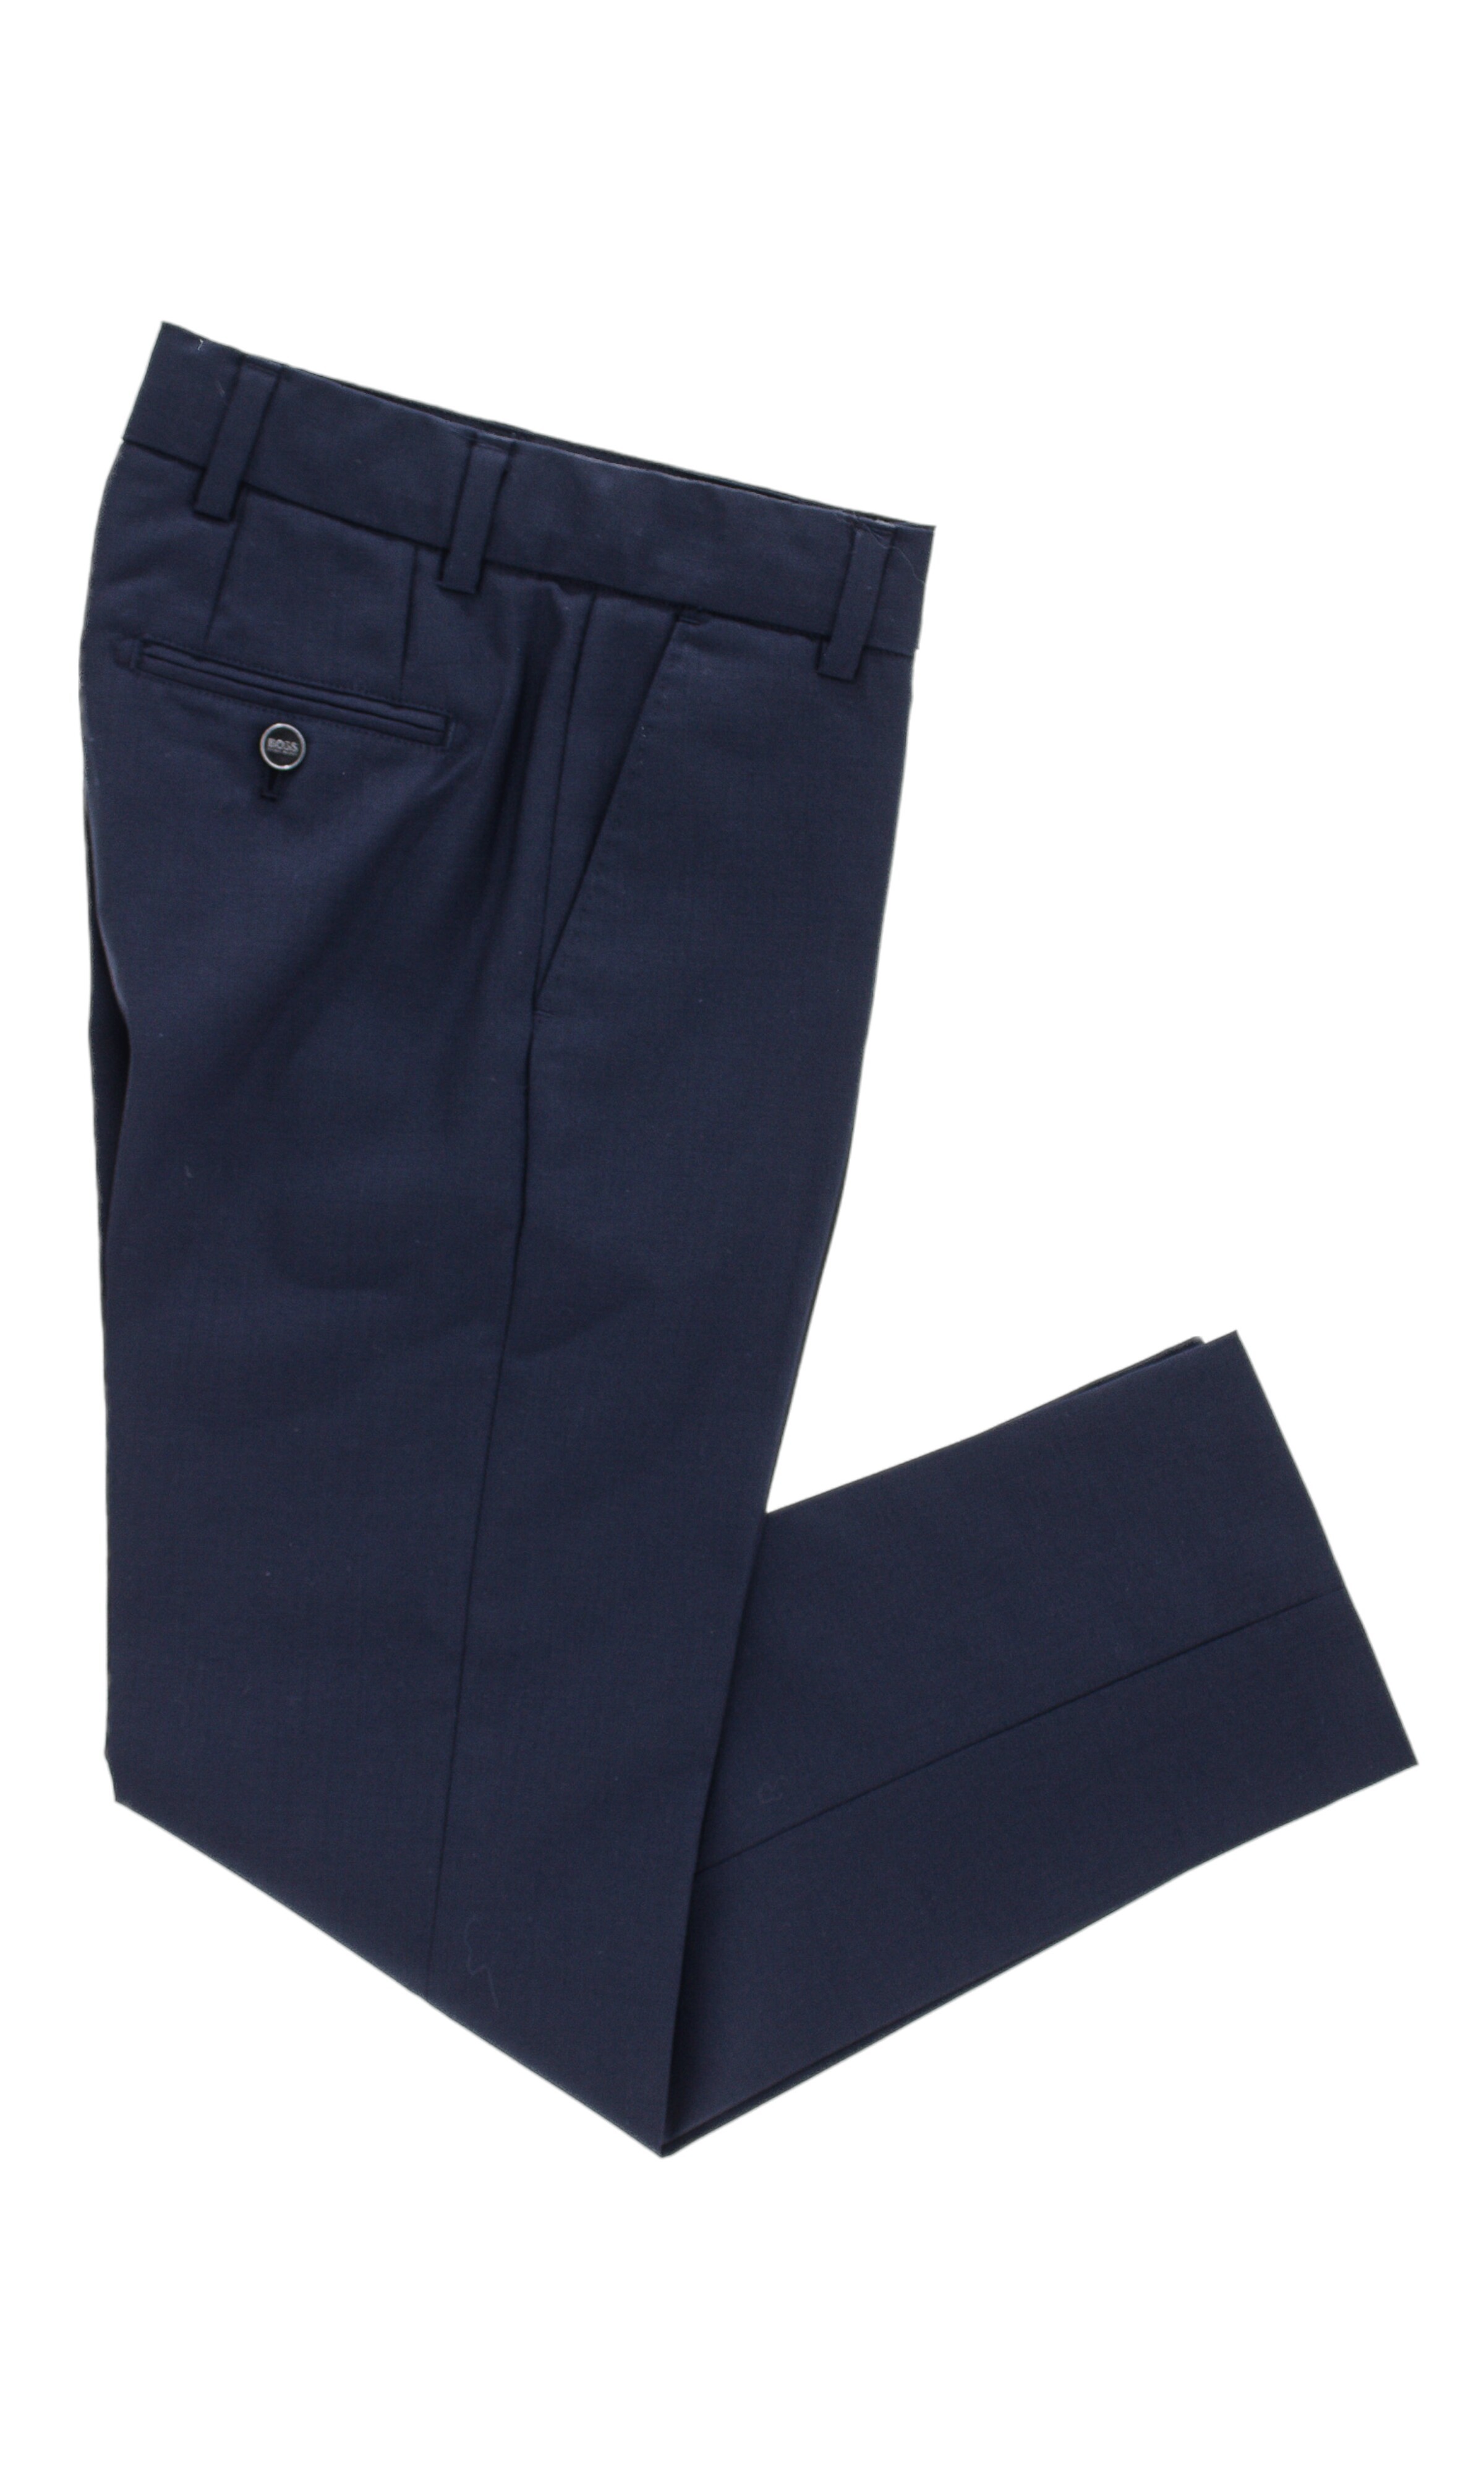 Navy blue trousers, Hugo Boss 